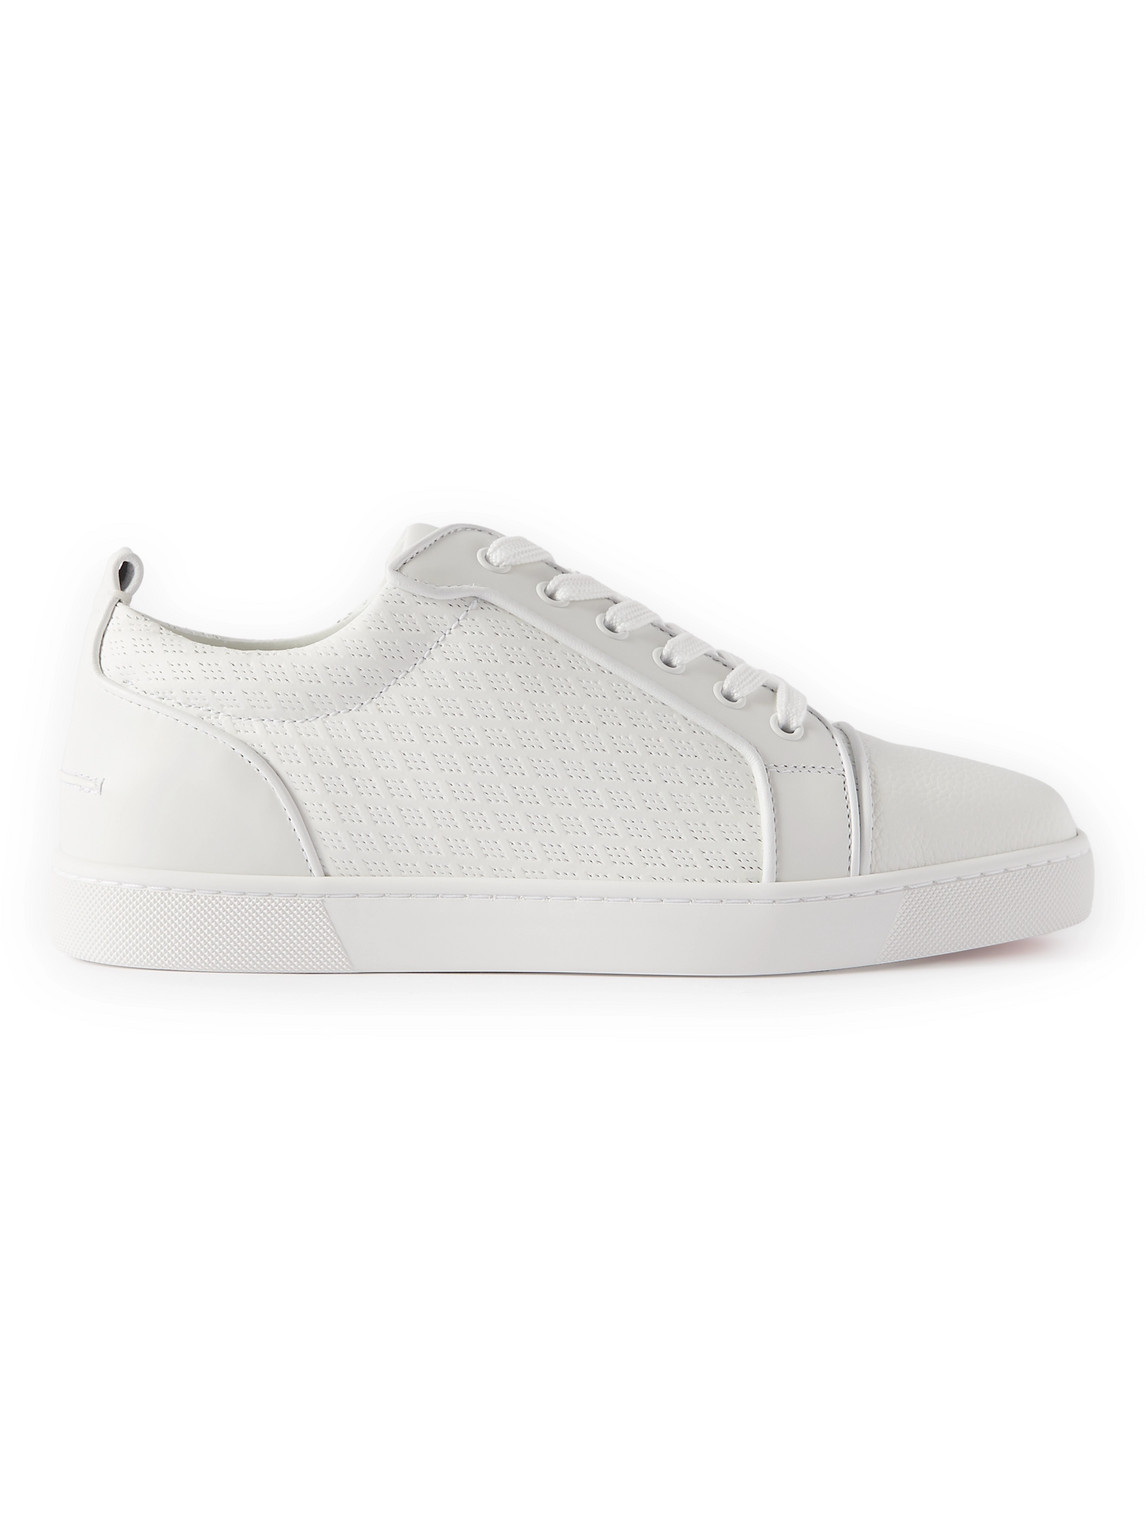 Christian Louboutin Louis Junior Leather Sneaker - White